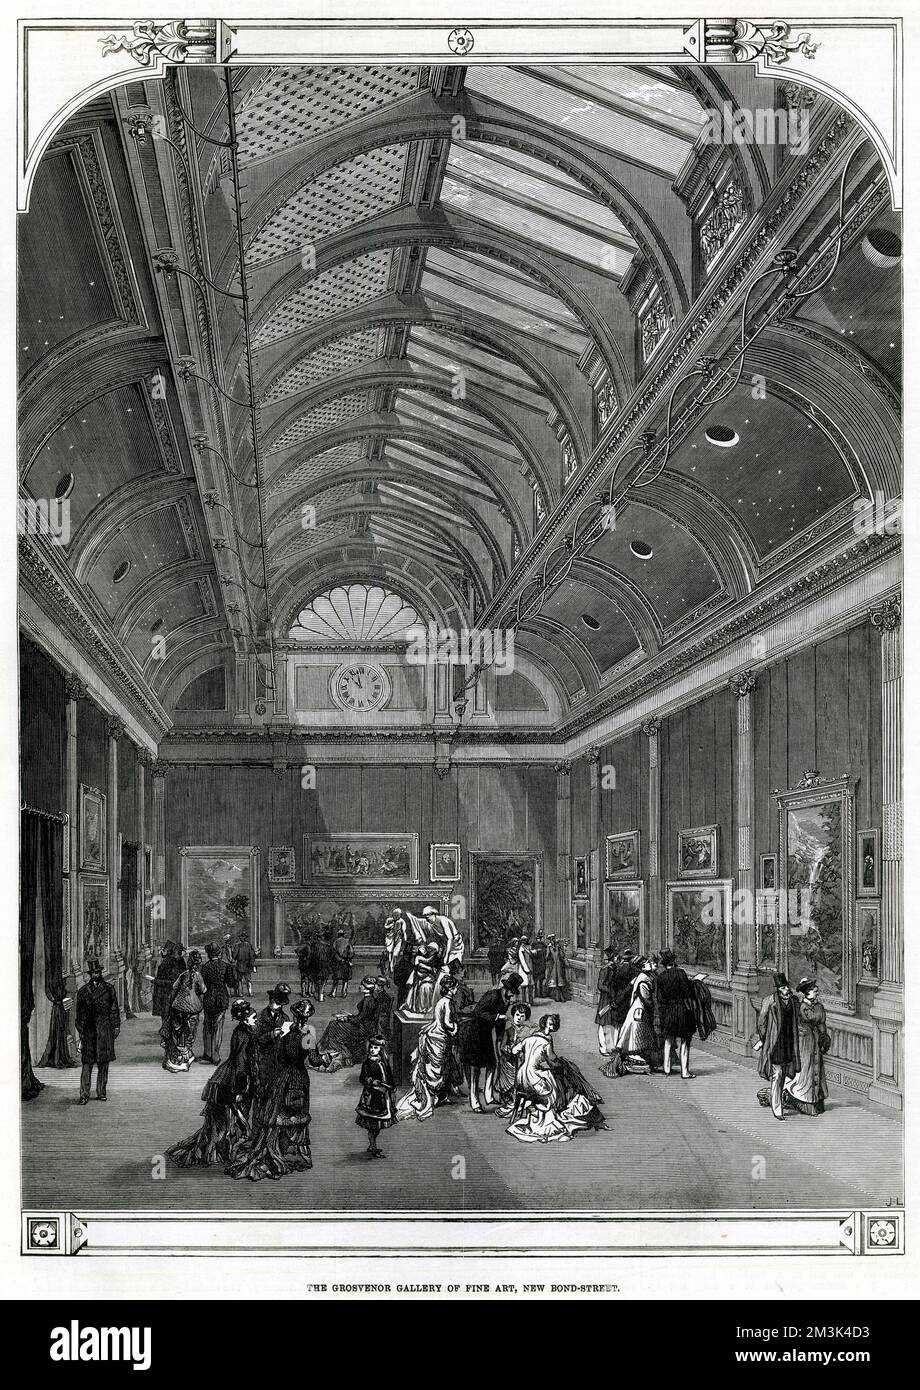 Intérieur de la Grosvenor Gallery of Fine Art, New Bond Street, Londres. Date: 1877 Banque D'Images